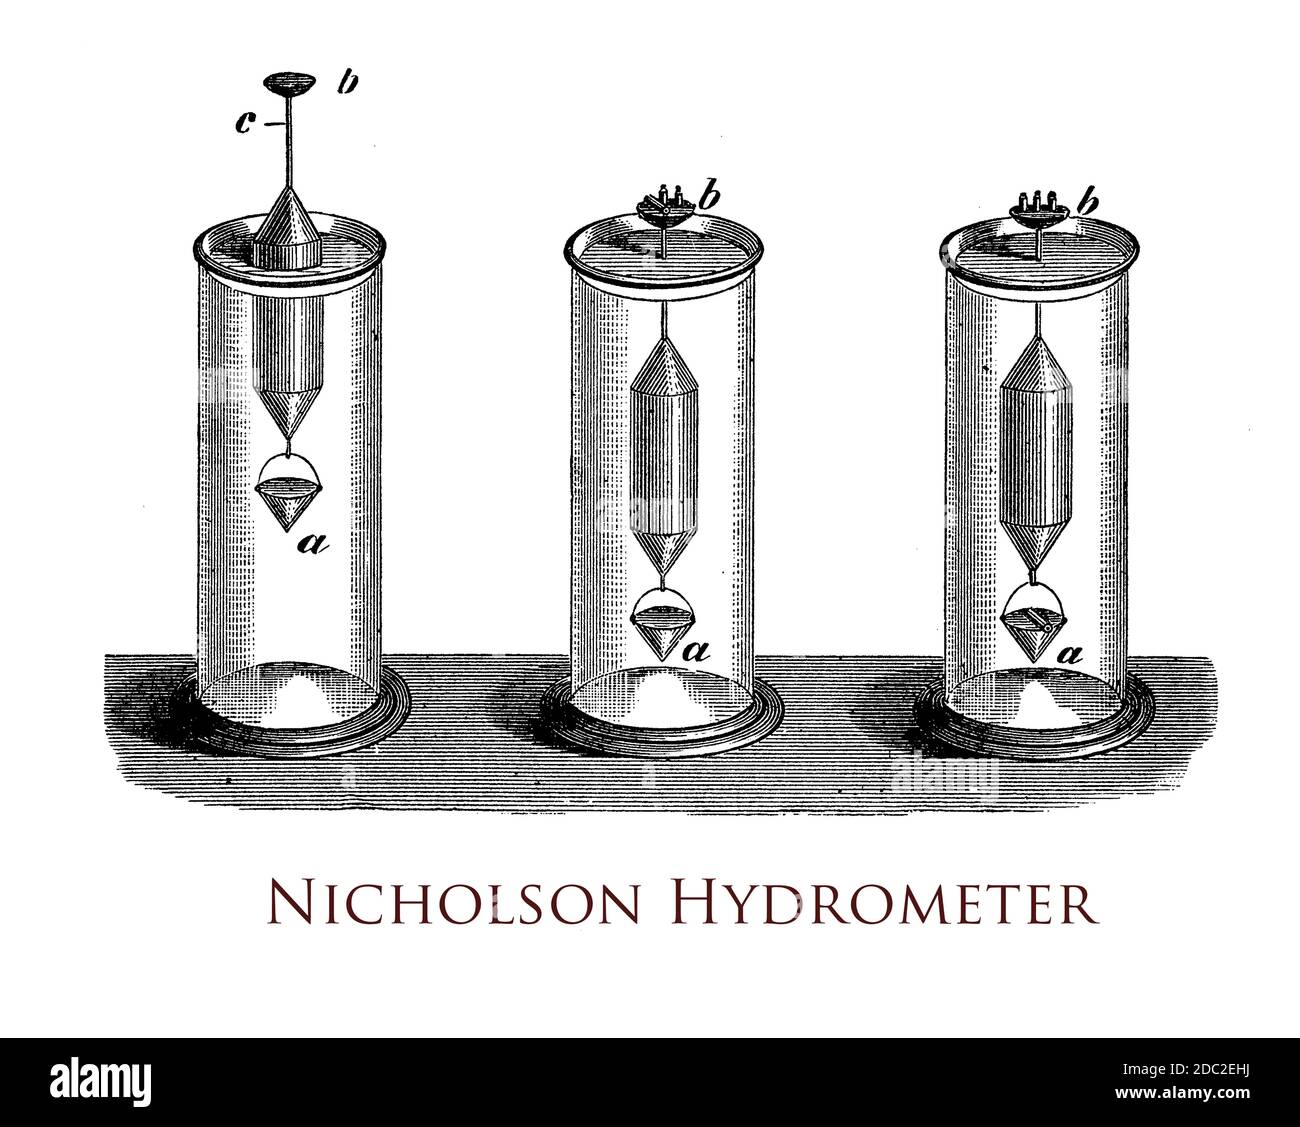 L'idrometro Nicholson misura la densità relativa dei liquidi in base alla galleggiabilità, con una vaschetta per piccoli pesi sulla parte superiore e un contenitore a cestello sul fondo in cui può essere collocato un campione Foto Stock